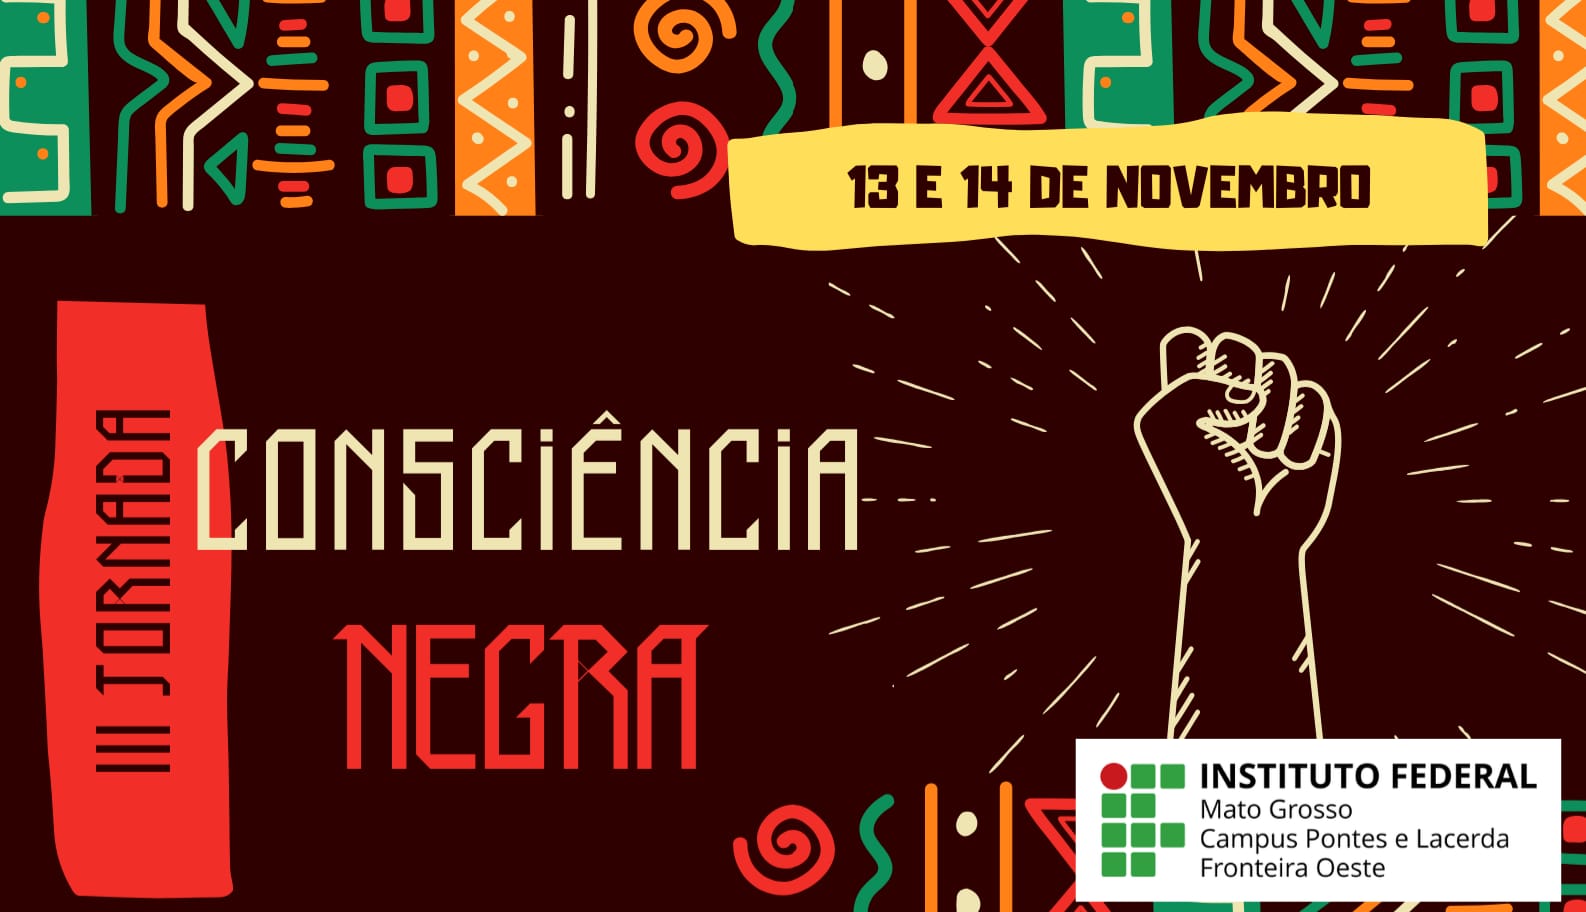 IFMT Pontes e Lacerda promove a 3ª Jornada da Consciência Negra nos dias 13 e 14 de novembro